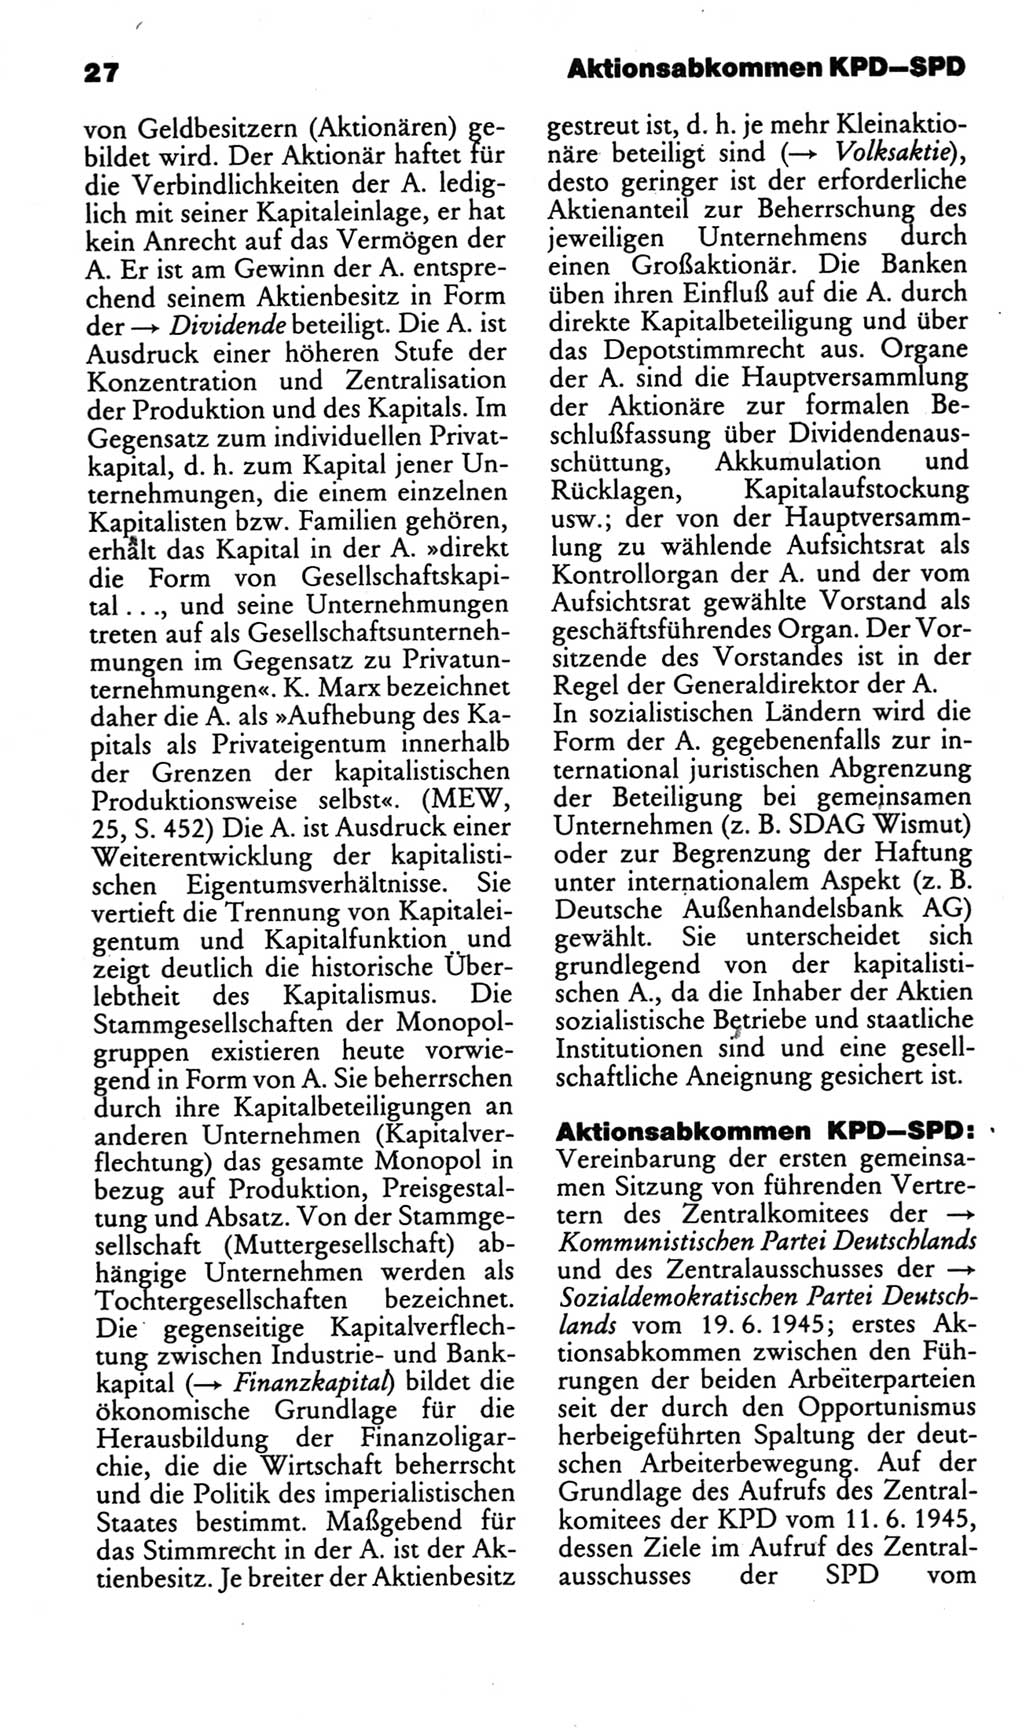 Kleines politisches Wörterbuch [Deutsche Demokratische Republik (DDR)] 1986, Seite 27 (Kl. pol. Wb. DDR 1986, S. 27)